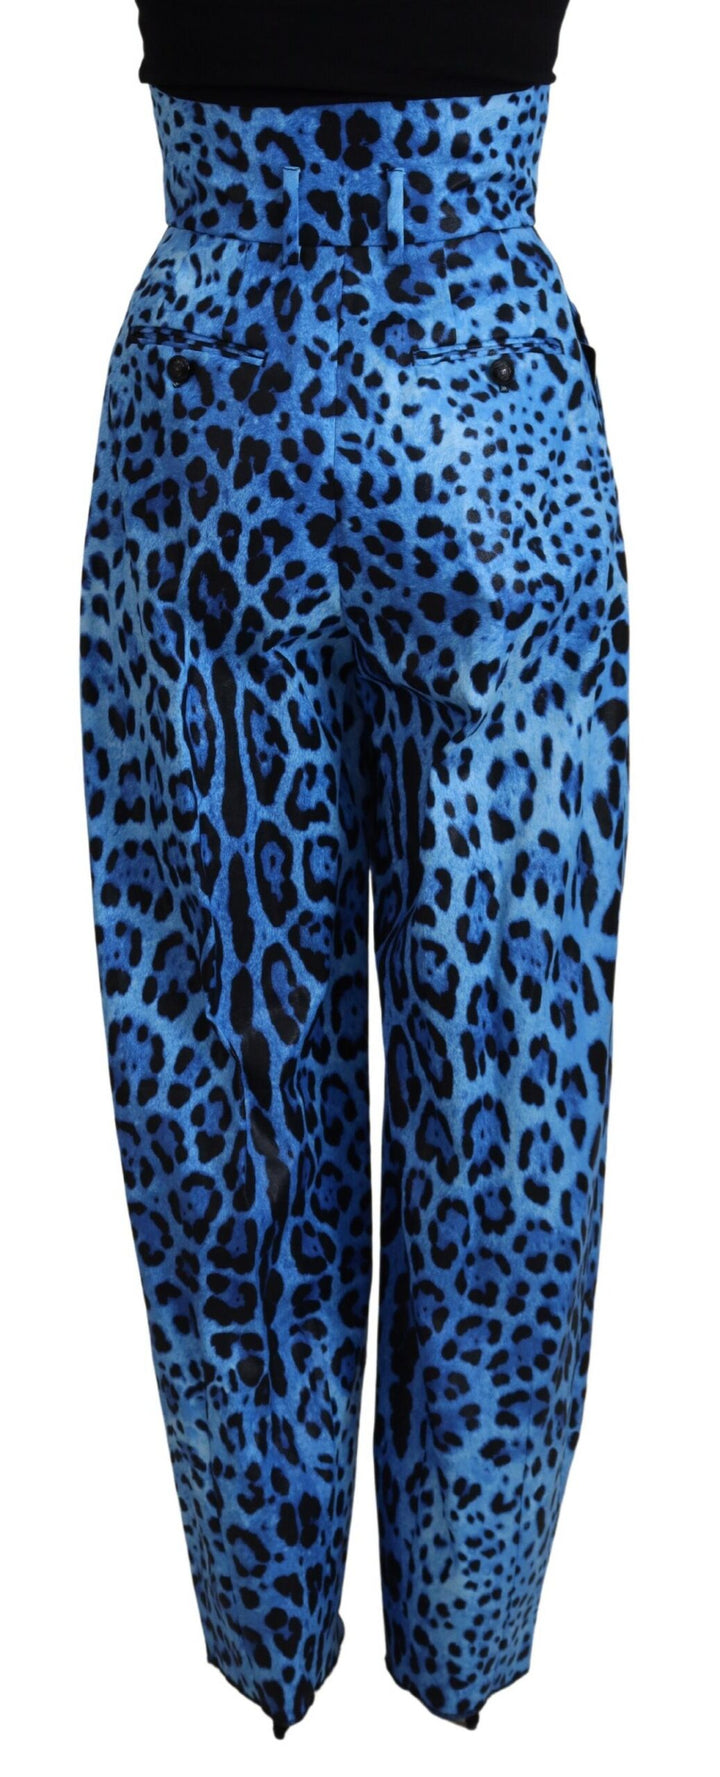 Blue Leopard Print High Waist Pants